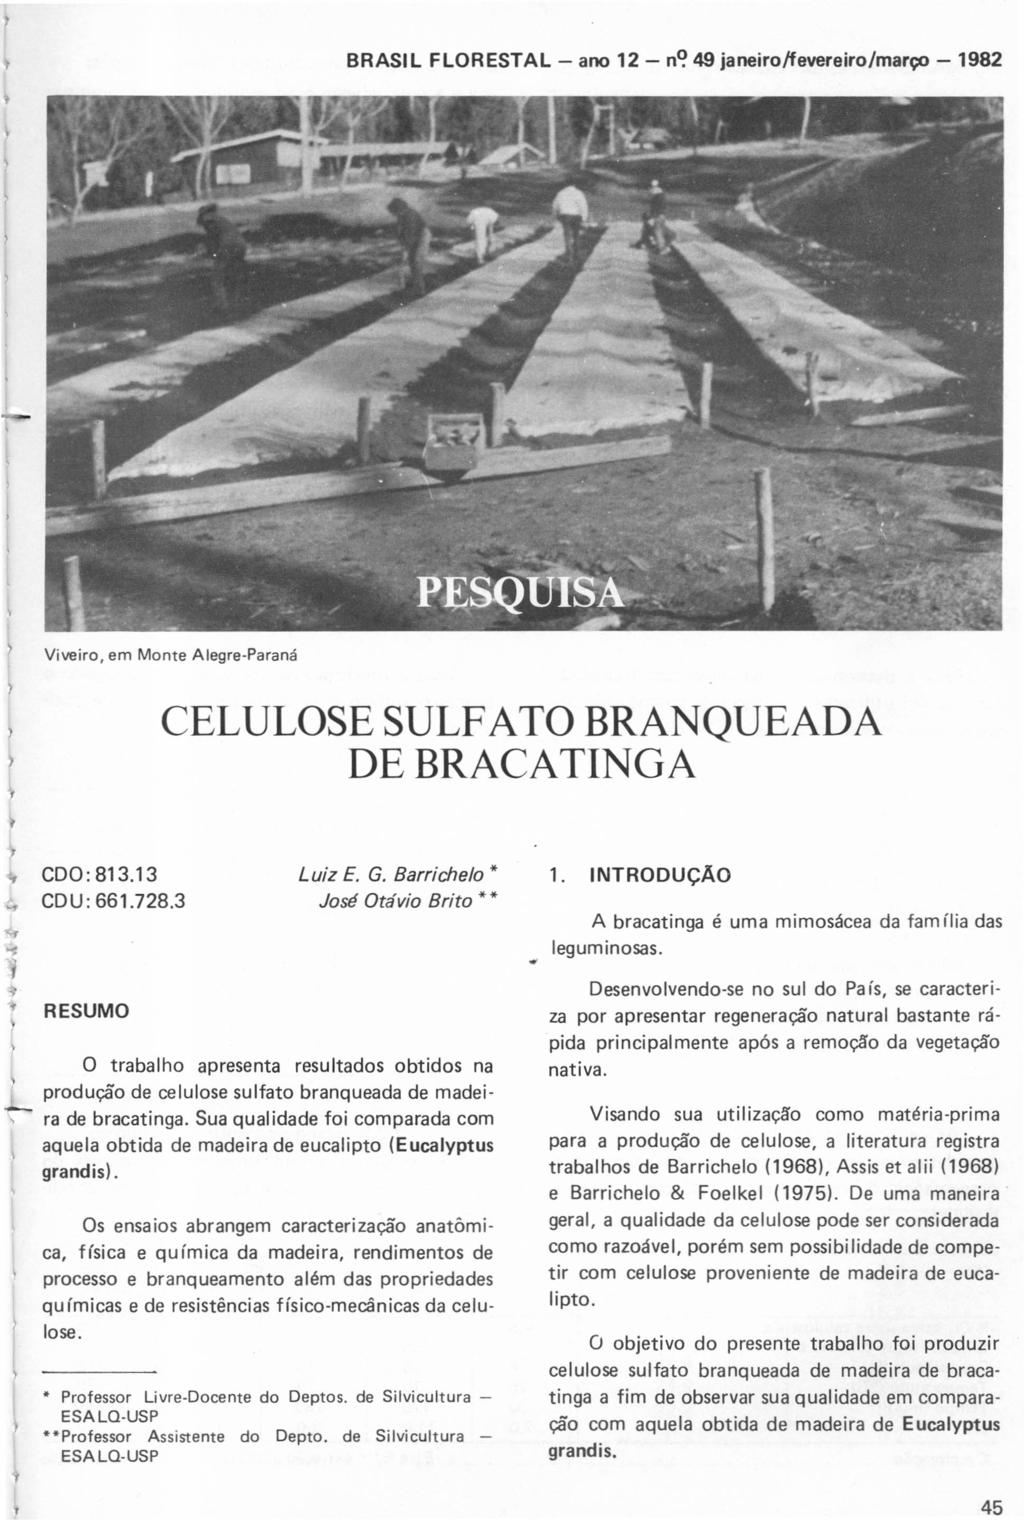 45 BRASIL FLORESTAL - ano 12 - n<?49 janeiro/fevereiro/março - 1982 Viveiro, em Monte Alegre-Paraná CELULOSE SULFATO BRANQUEADA DE BRACATINGA coa: 813_13 CDU: 661.728.3 Luiz E. G.